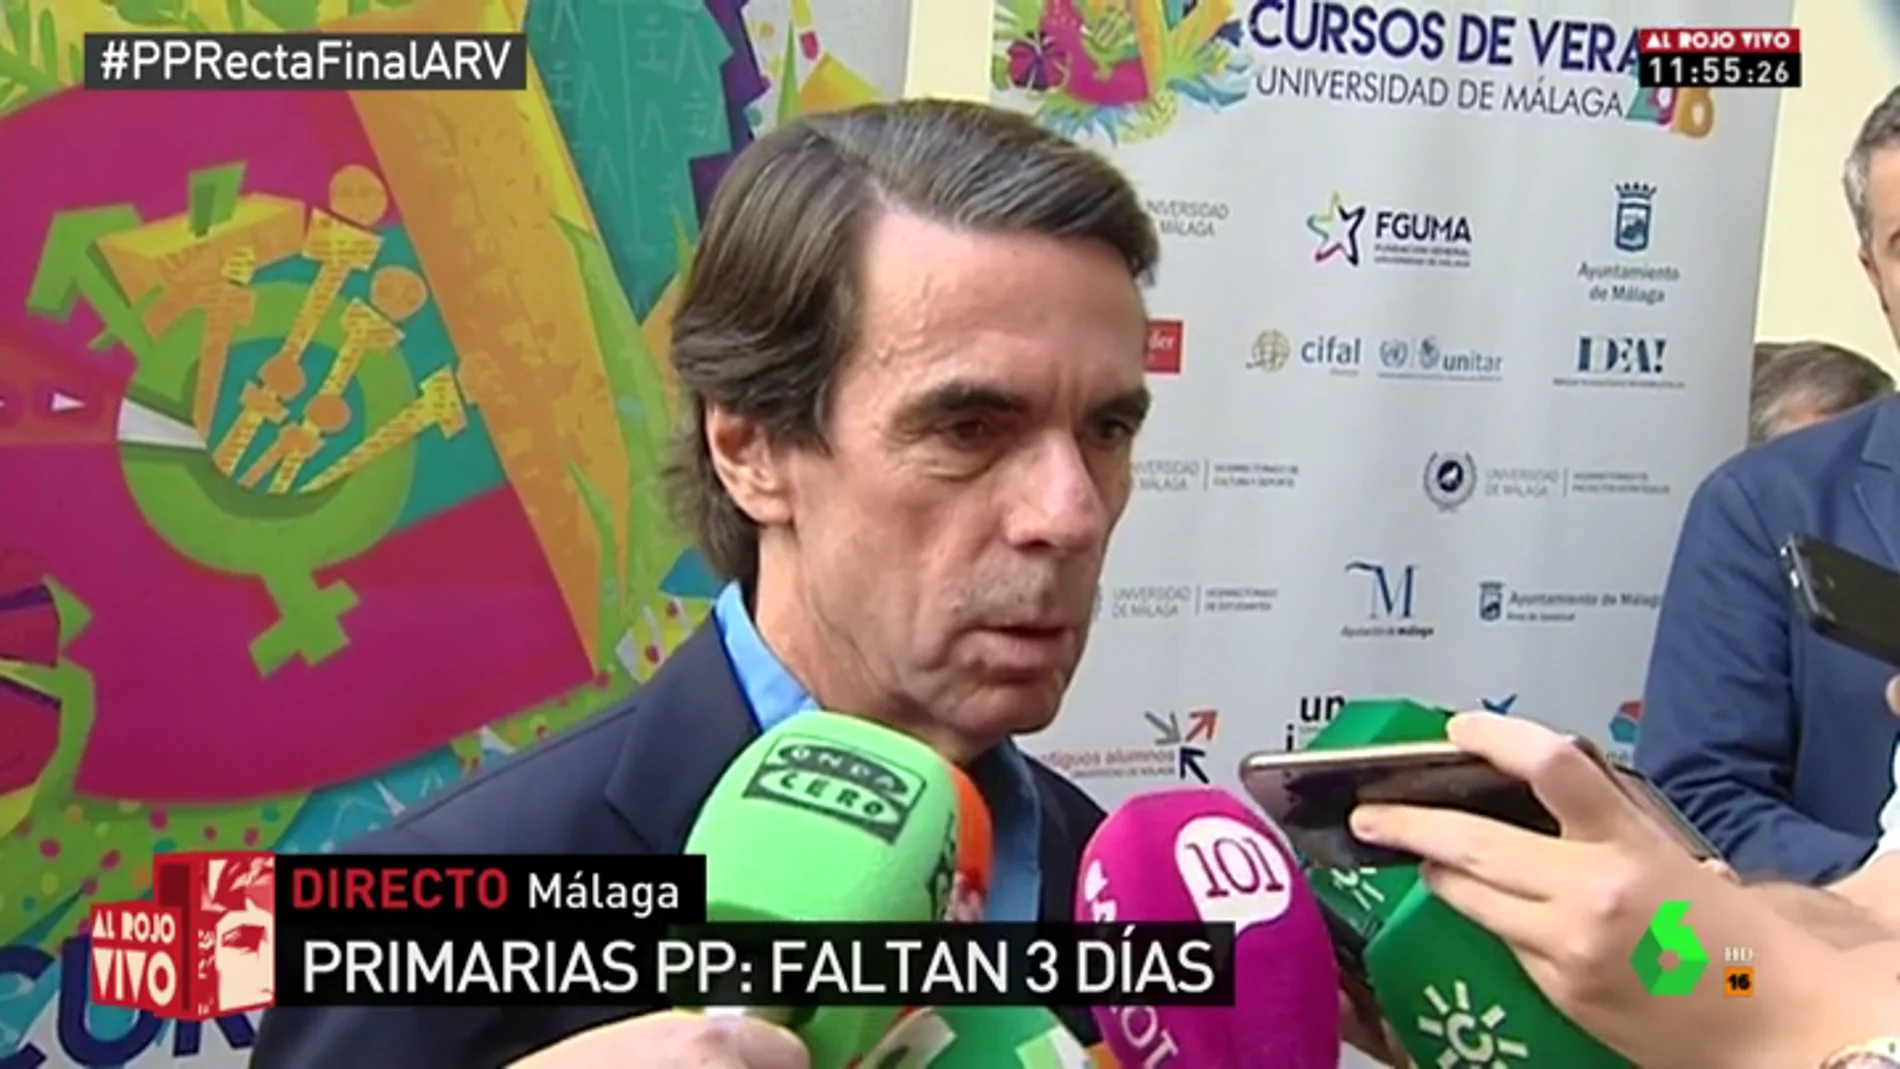 El expresidente del Gobierno José María Aznar